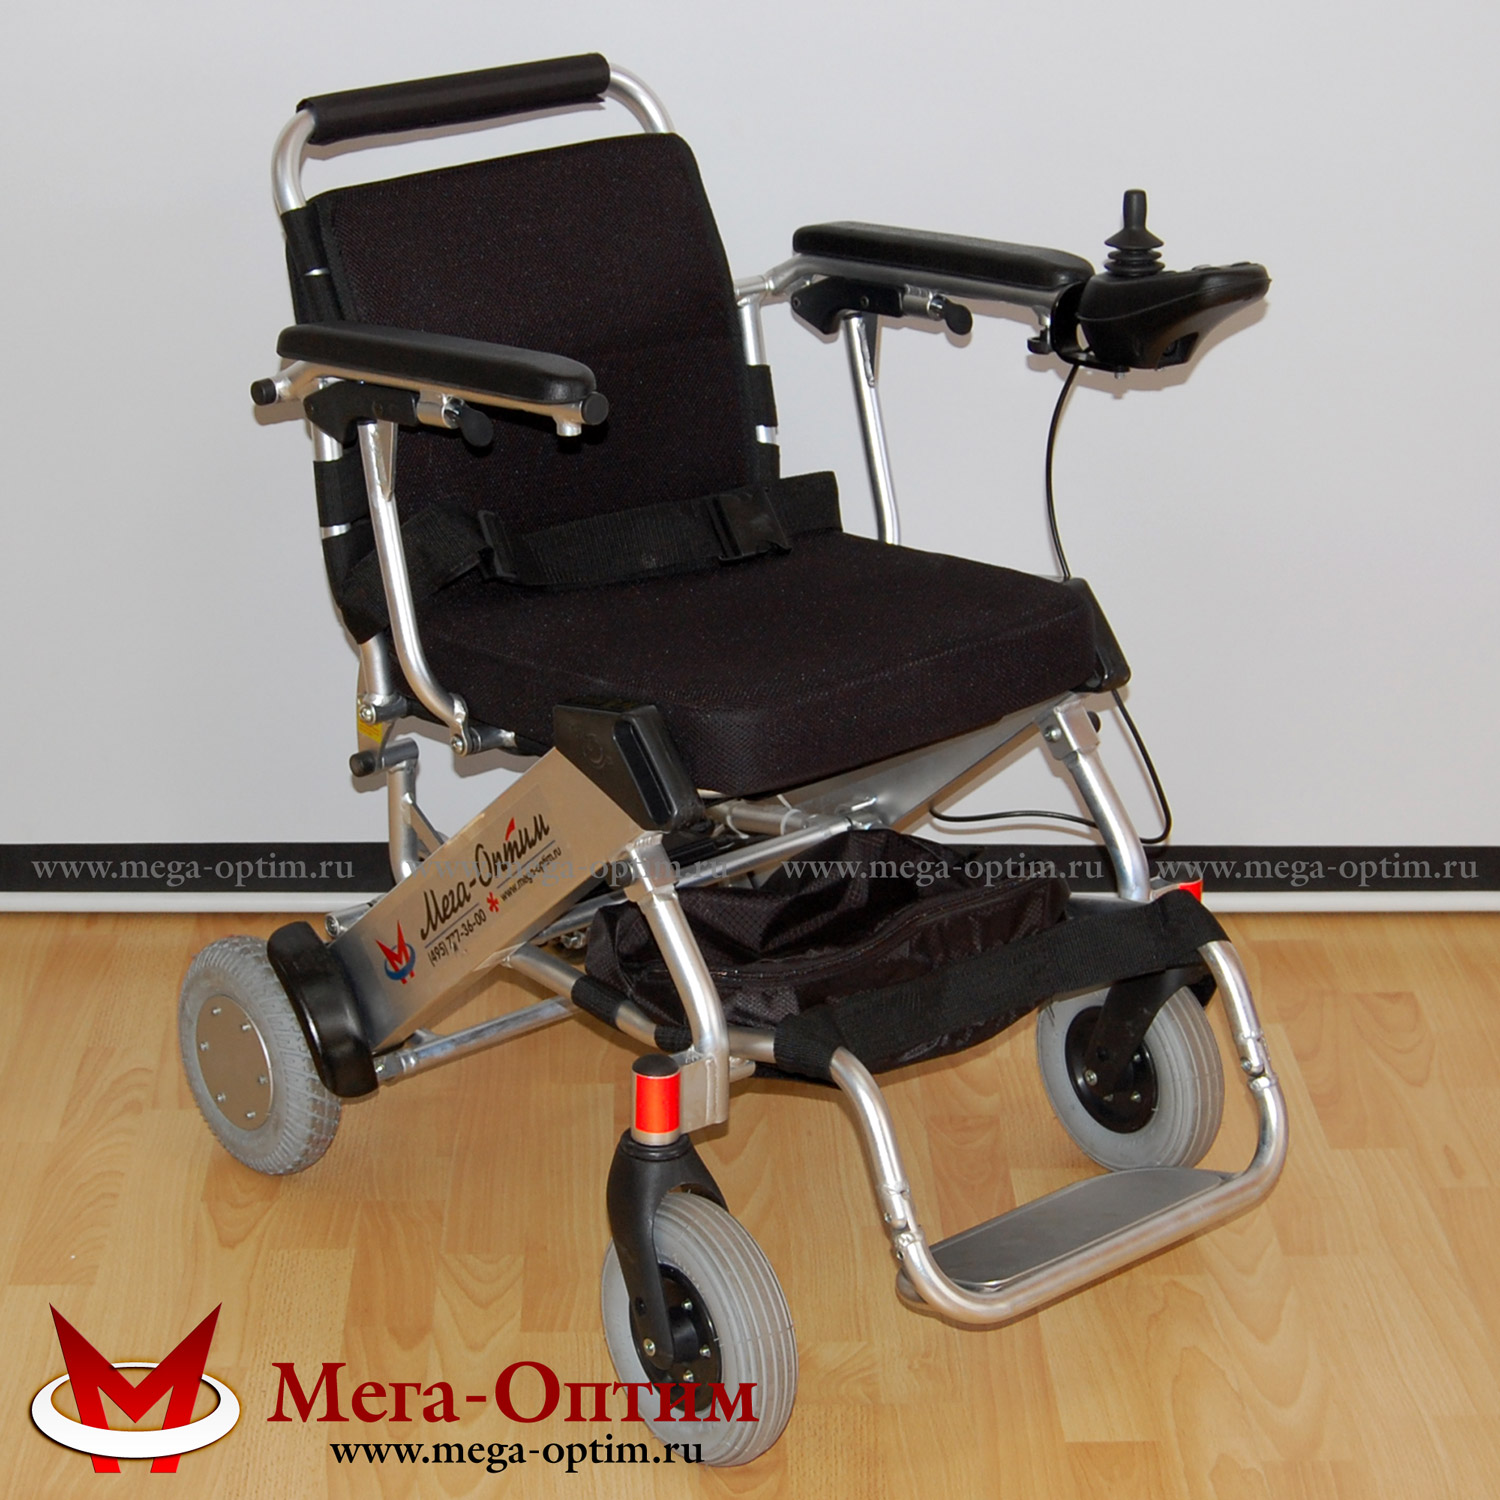 Кресло-коляска электрическая FS 127  Мега-Оптим